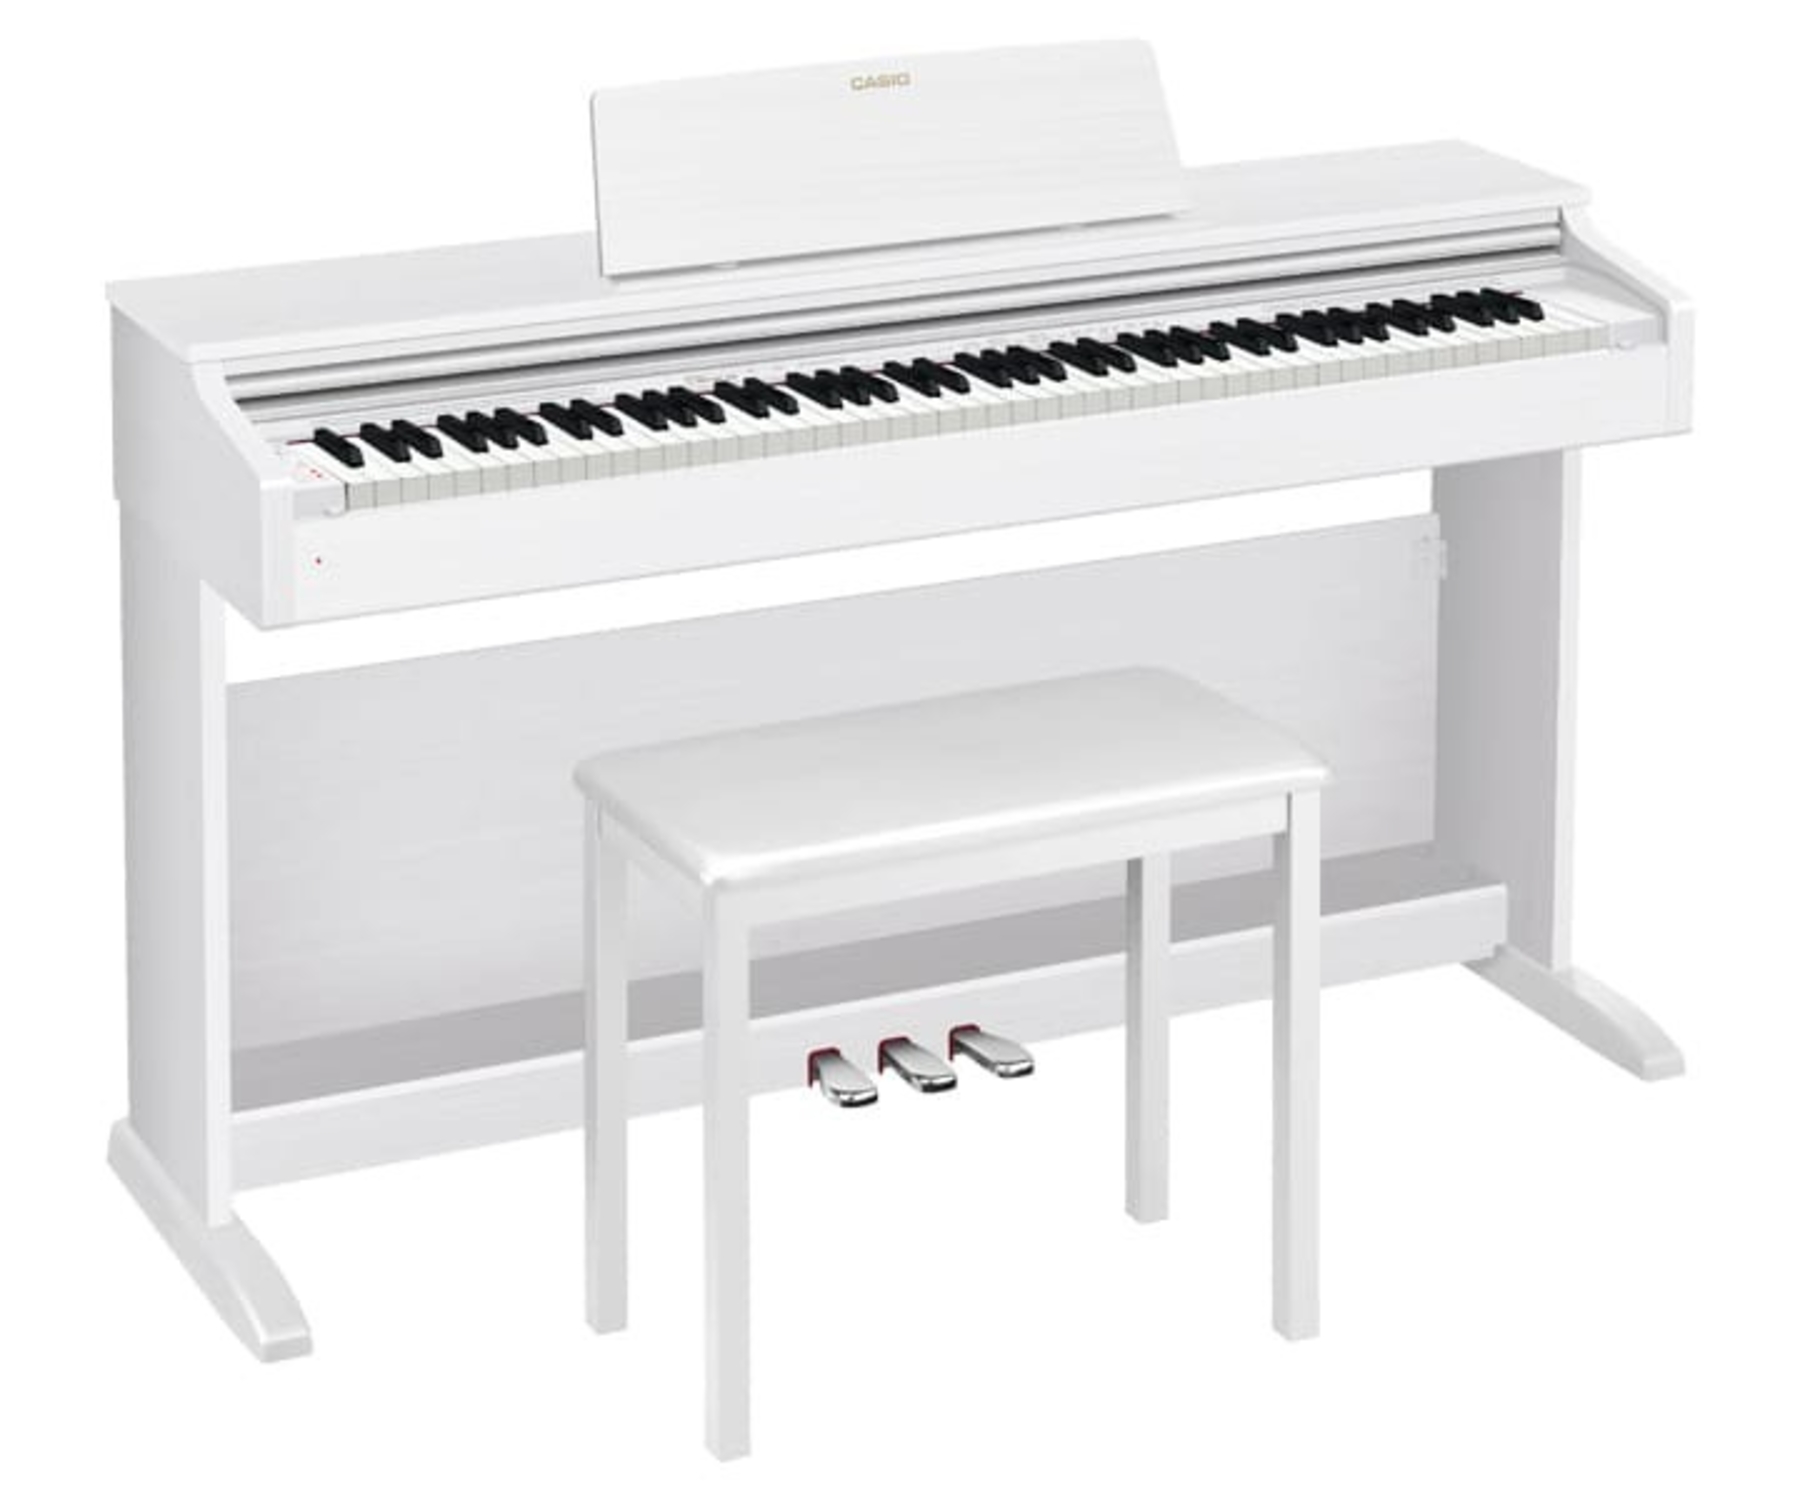 Цифровые пианино Casio Celviano AP-270WE (банкетка в комплекте) цифровые пианино casio celviano ap 270we банкетка в комплекте